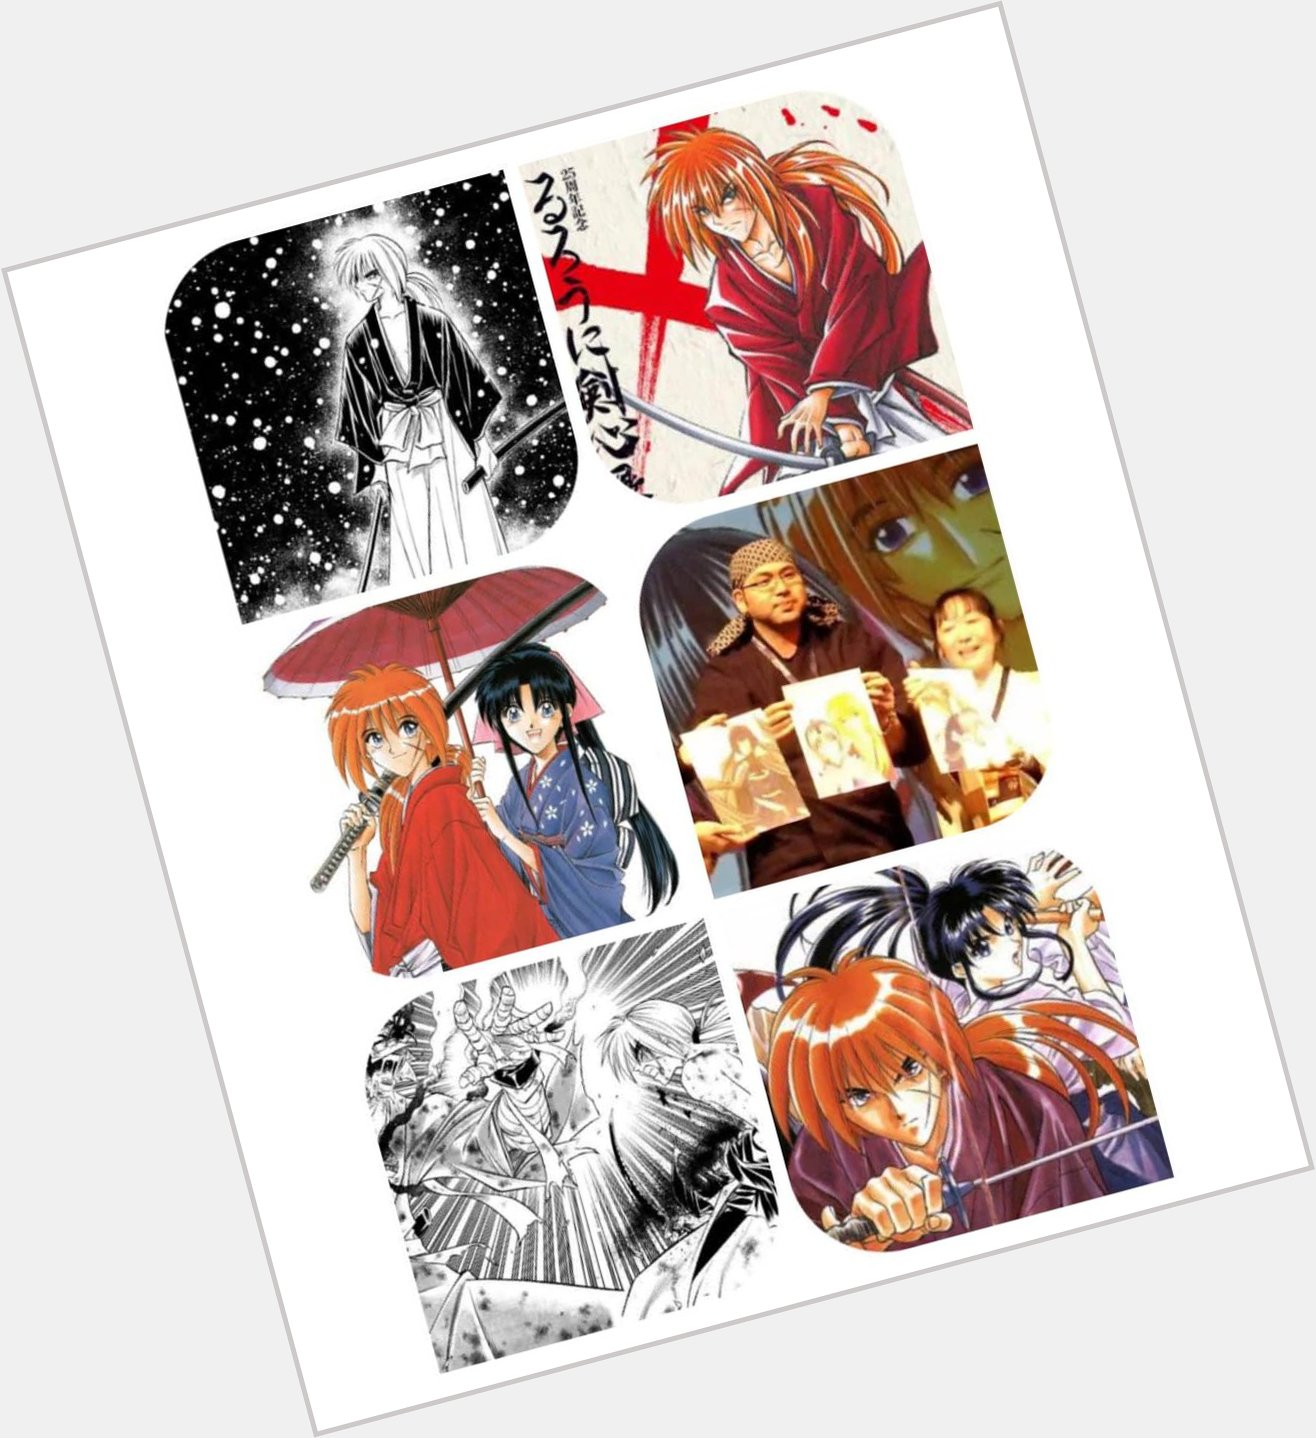 Happy Birthday to the creator of the Japanese manga series Rurouni Kenshin, Nobuhiro Watsuki     